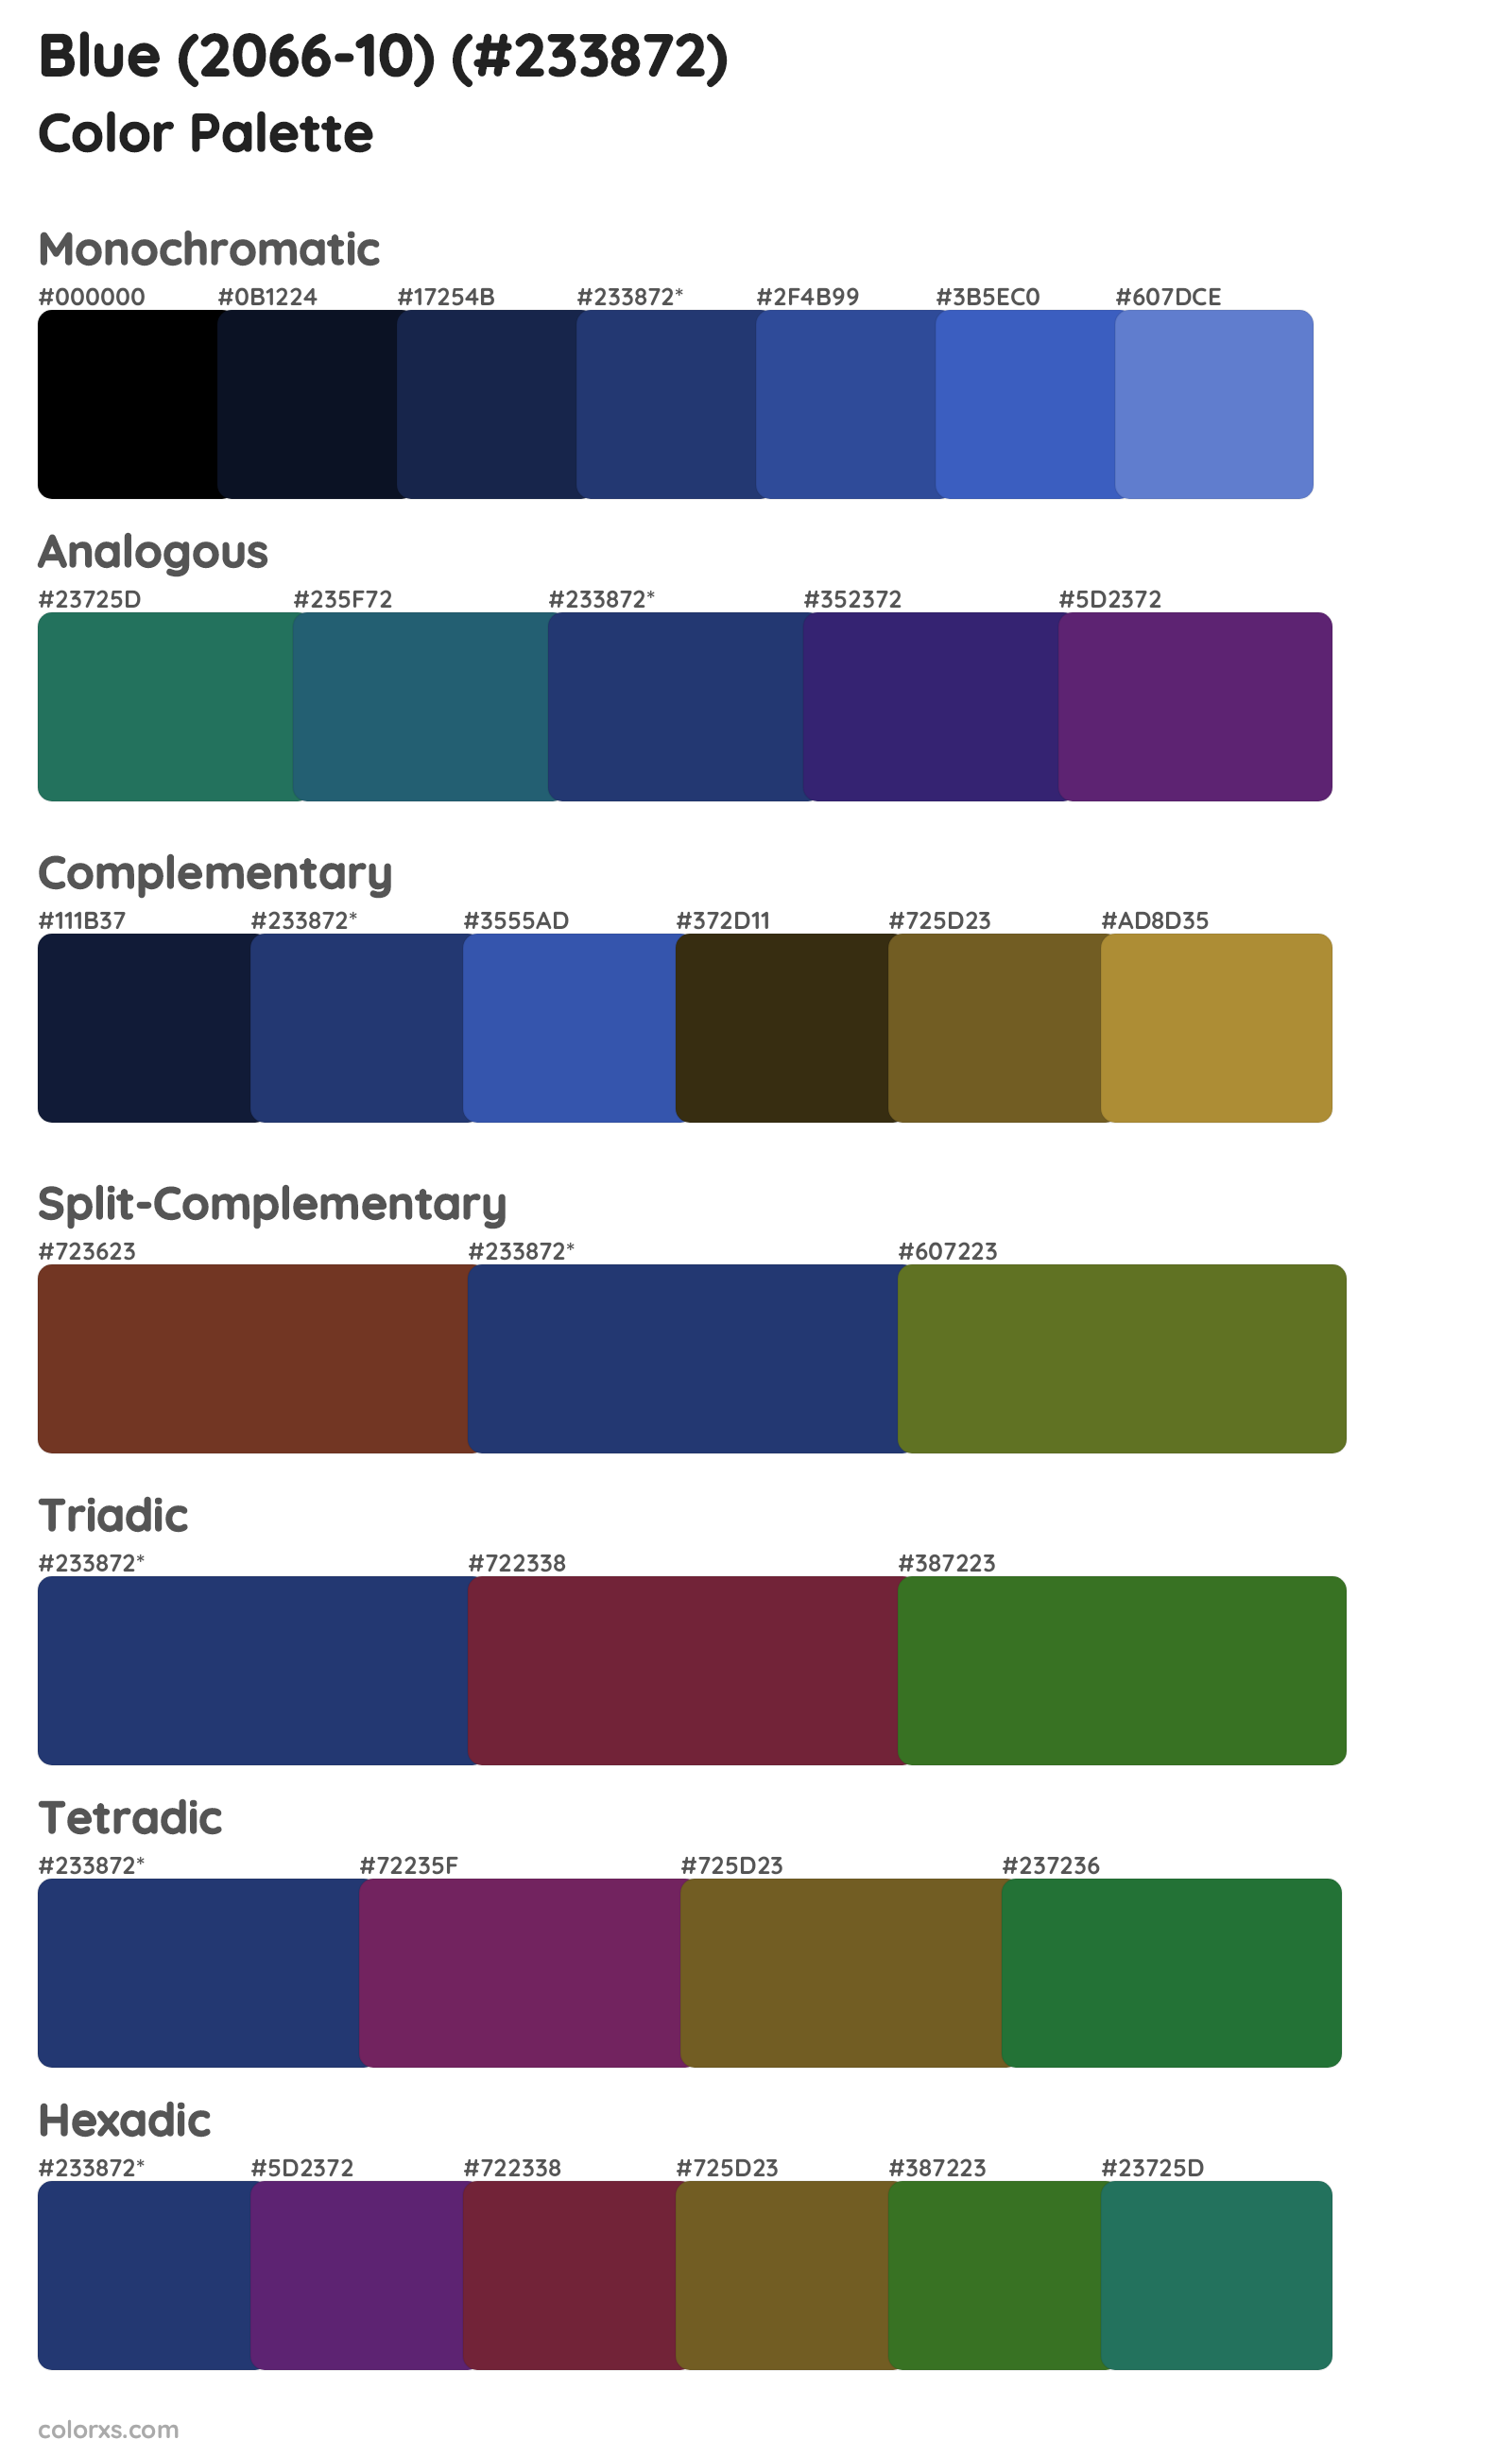 Blue (2066-10) Color Scheme Palettes